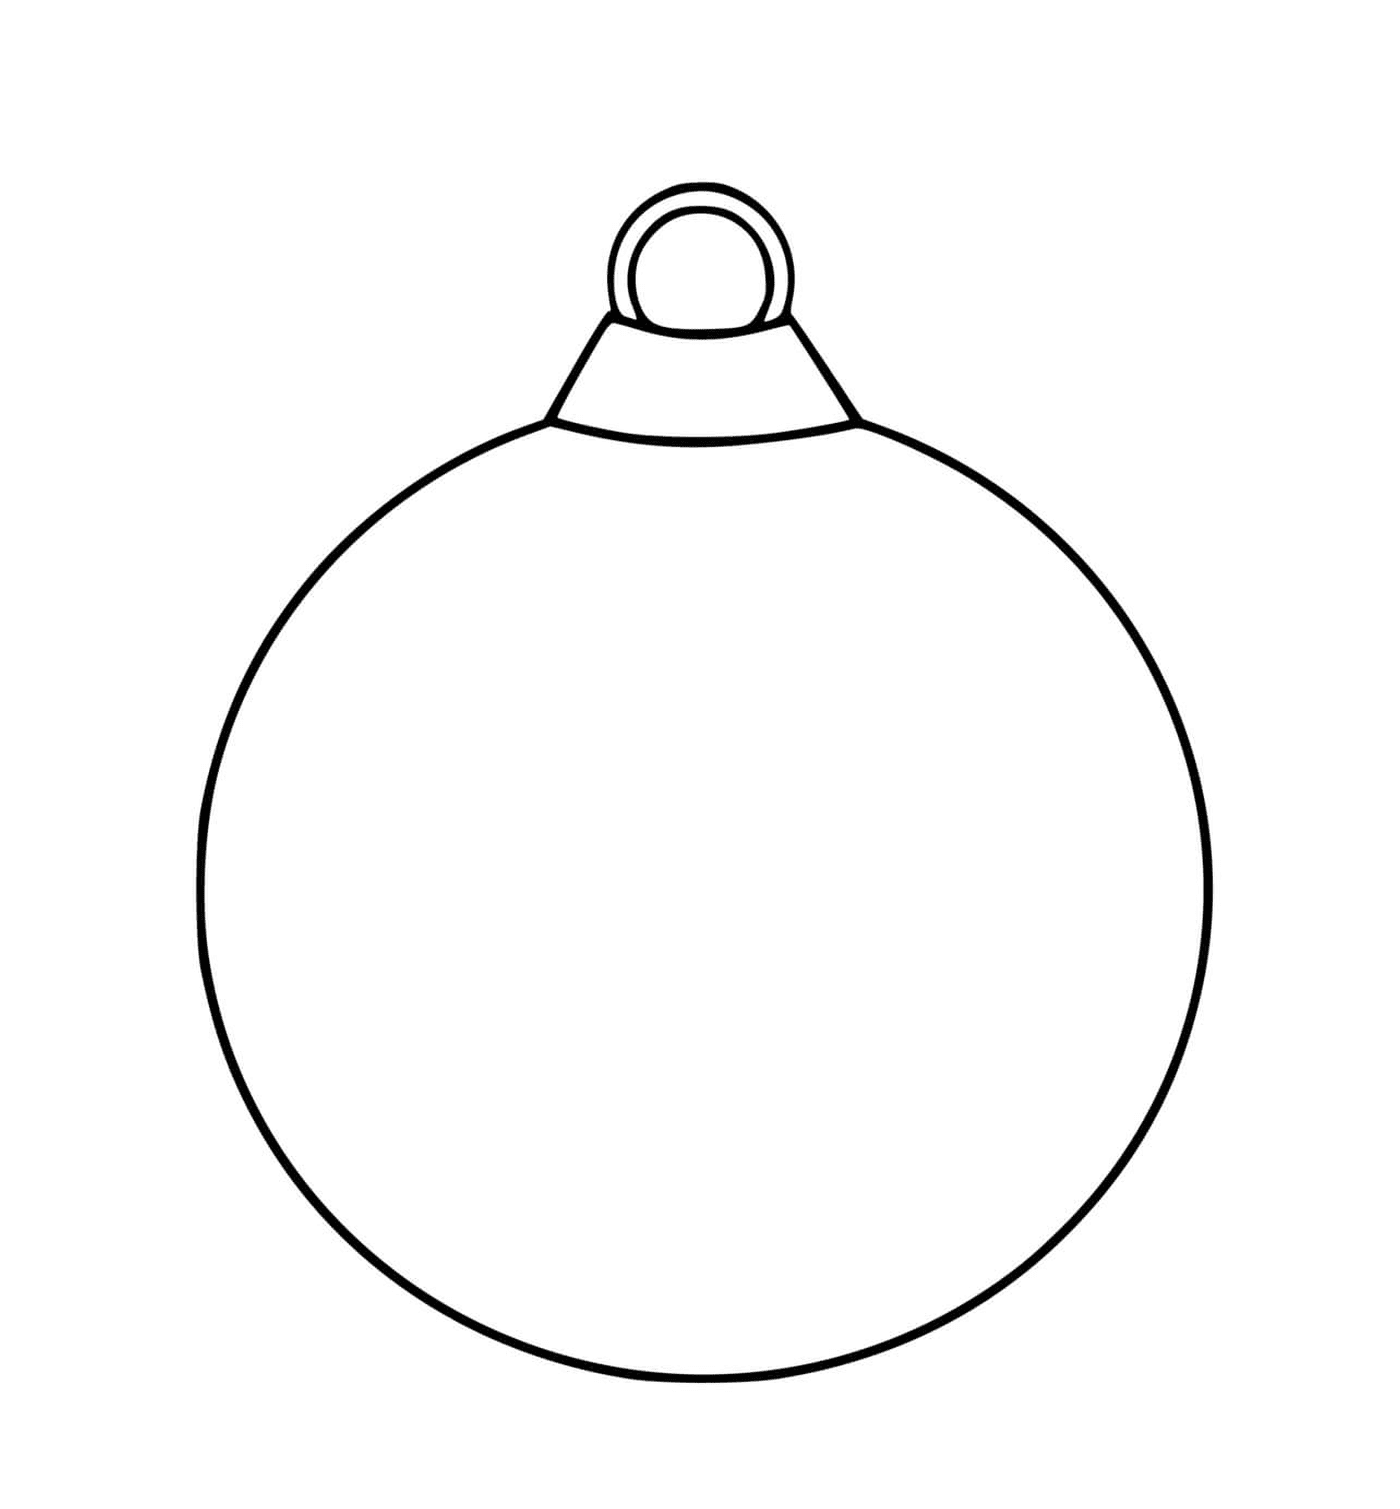  كرة عيد ميلاد فارغة مع مخطط أسود بسيط 